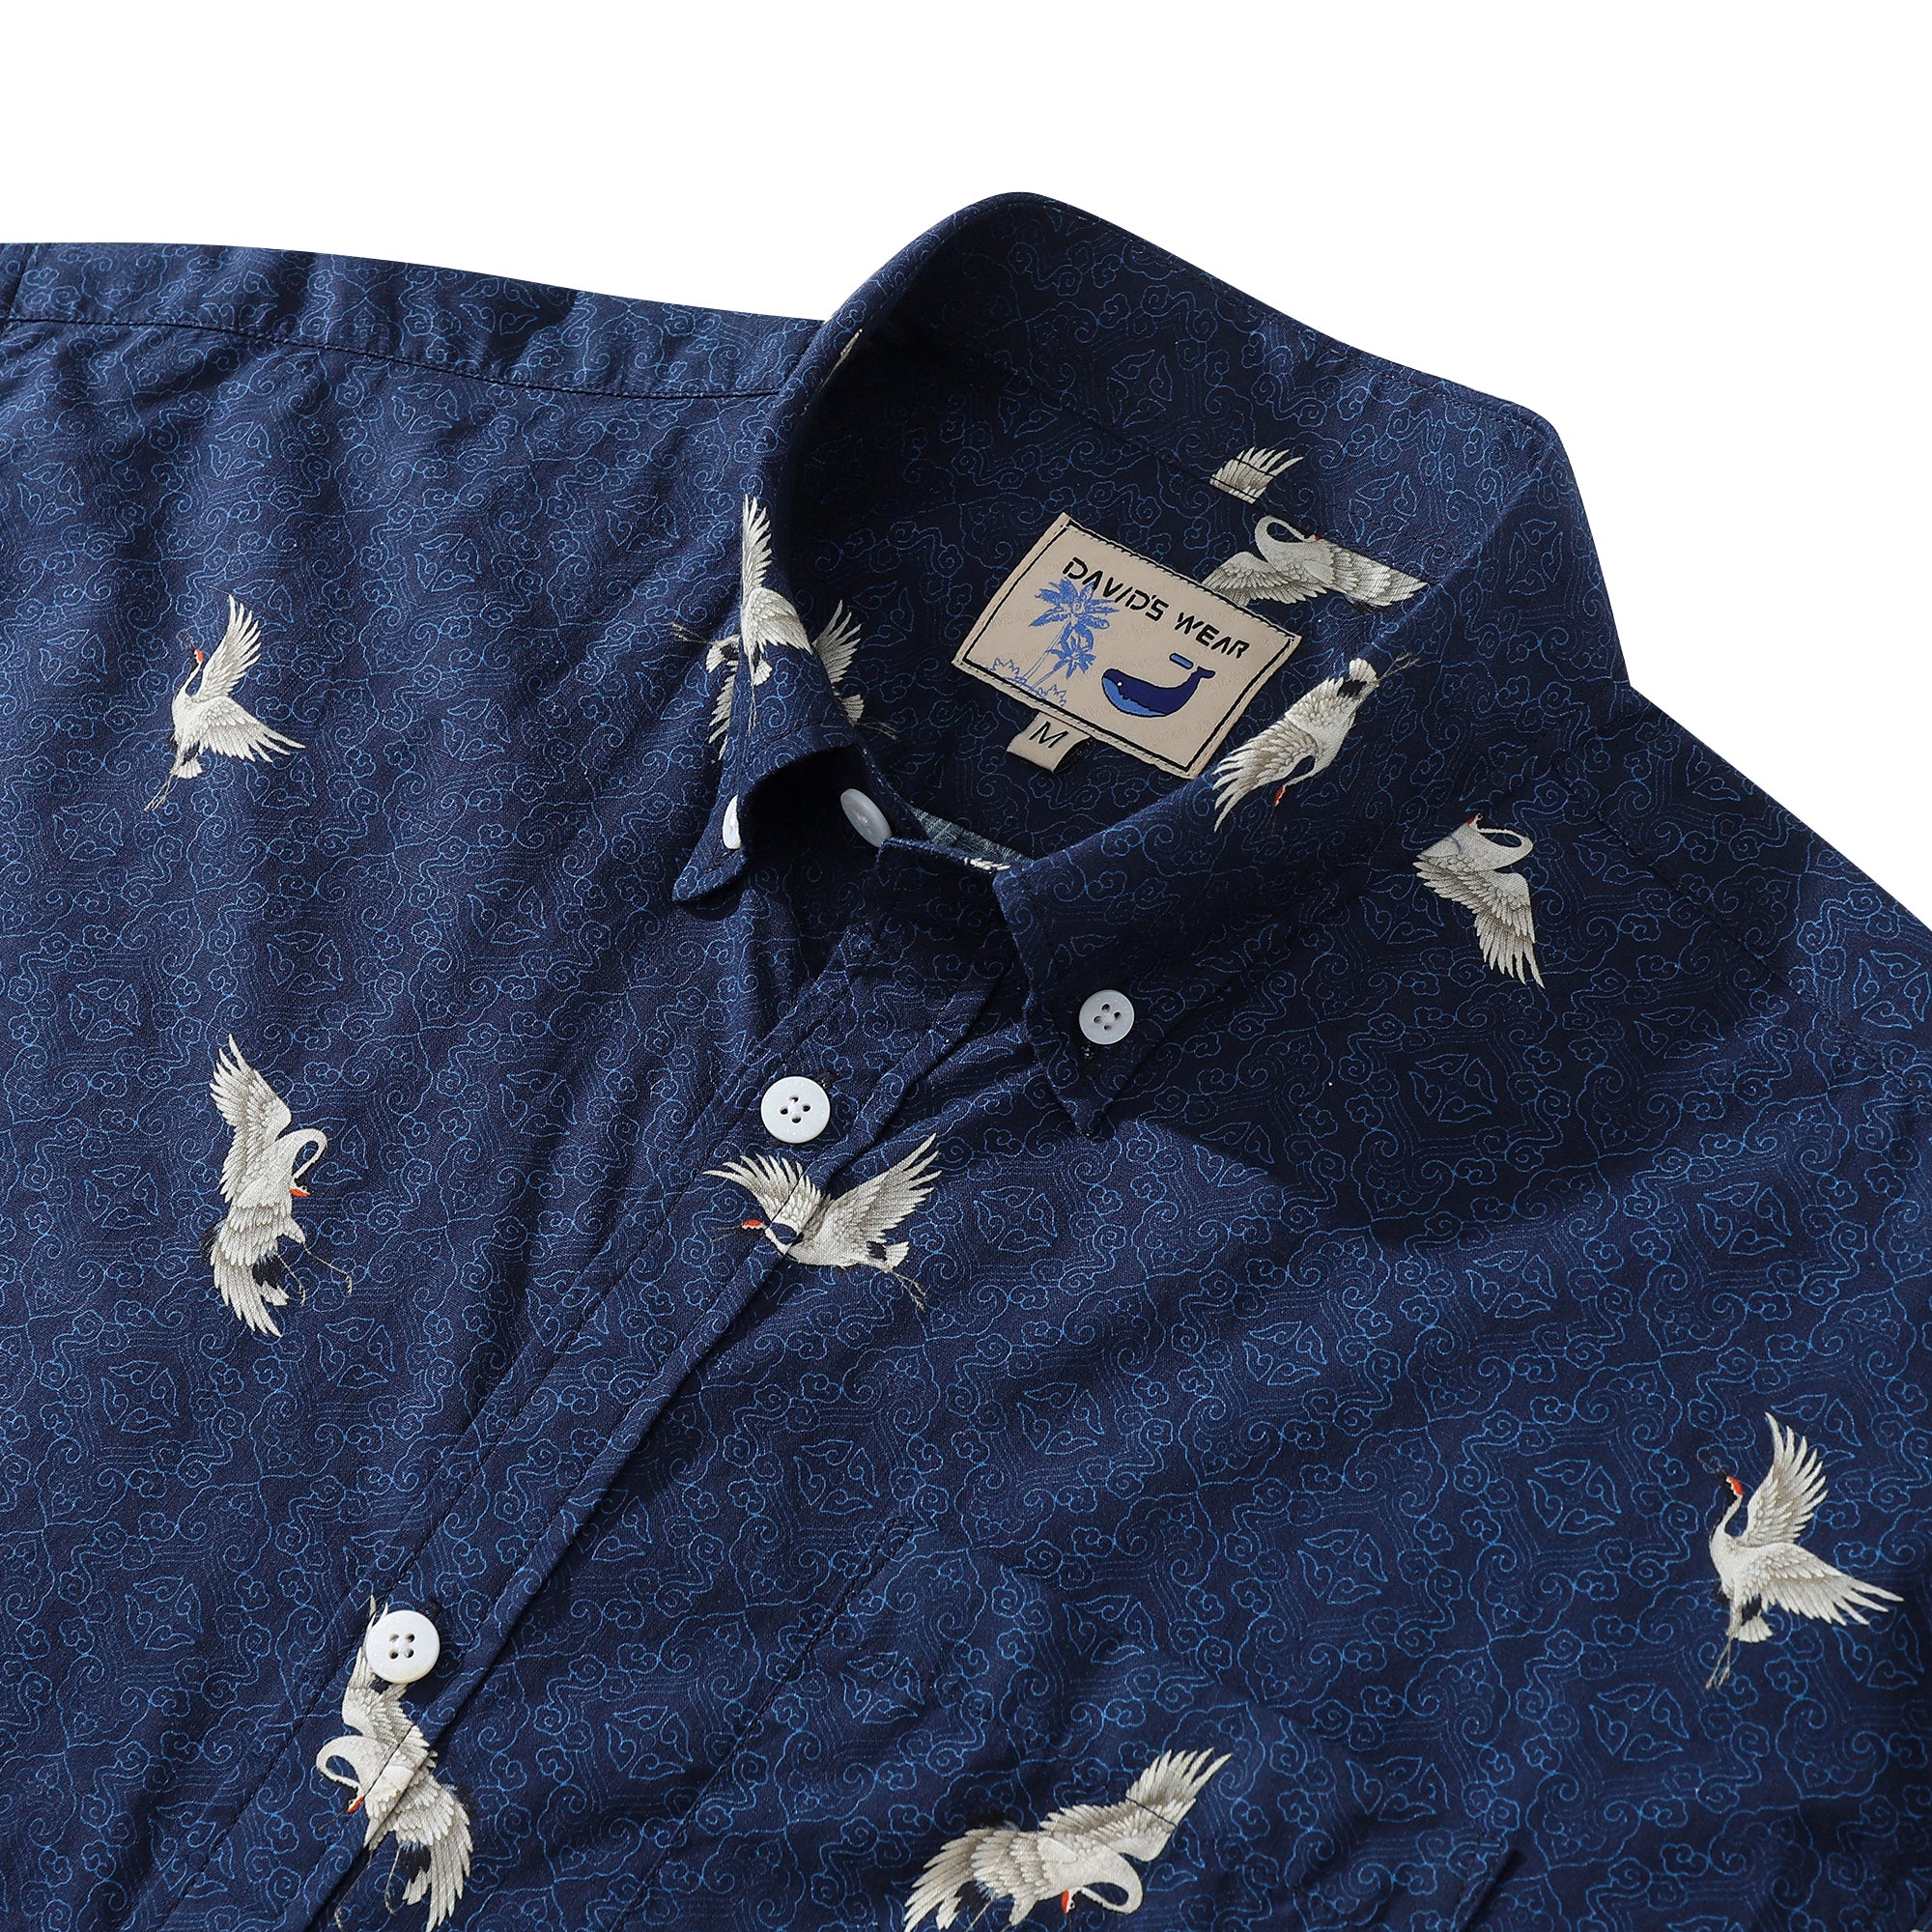 Hawaiian Shirt For Men Crane Print Short Sleeve Cotton Button Down - Blue